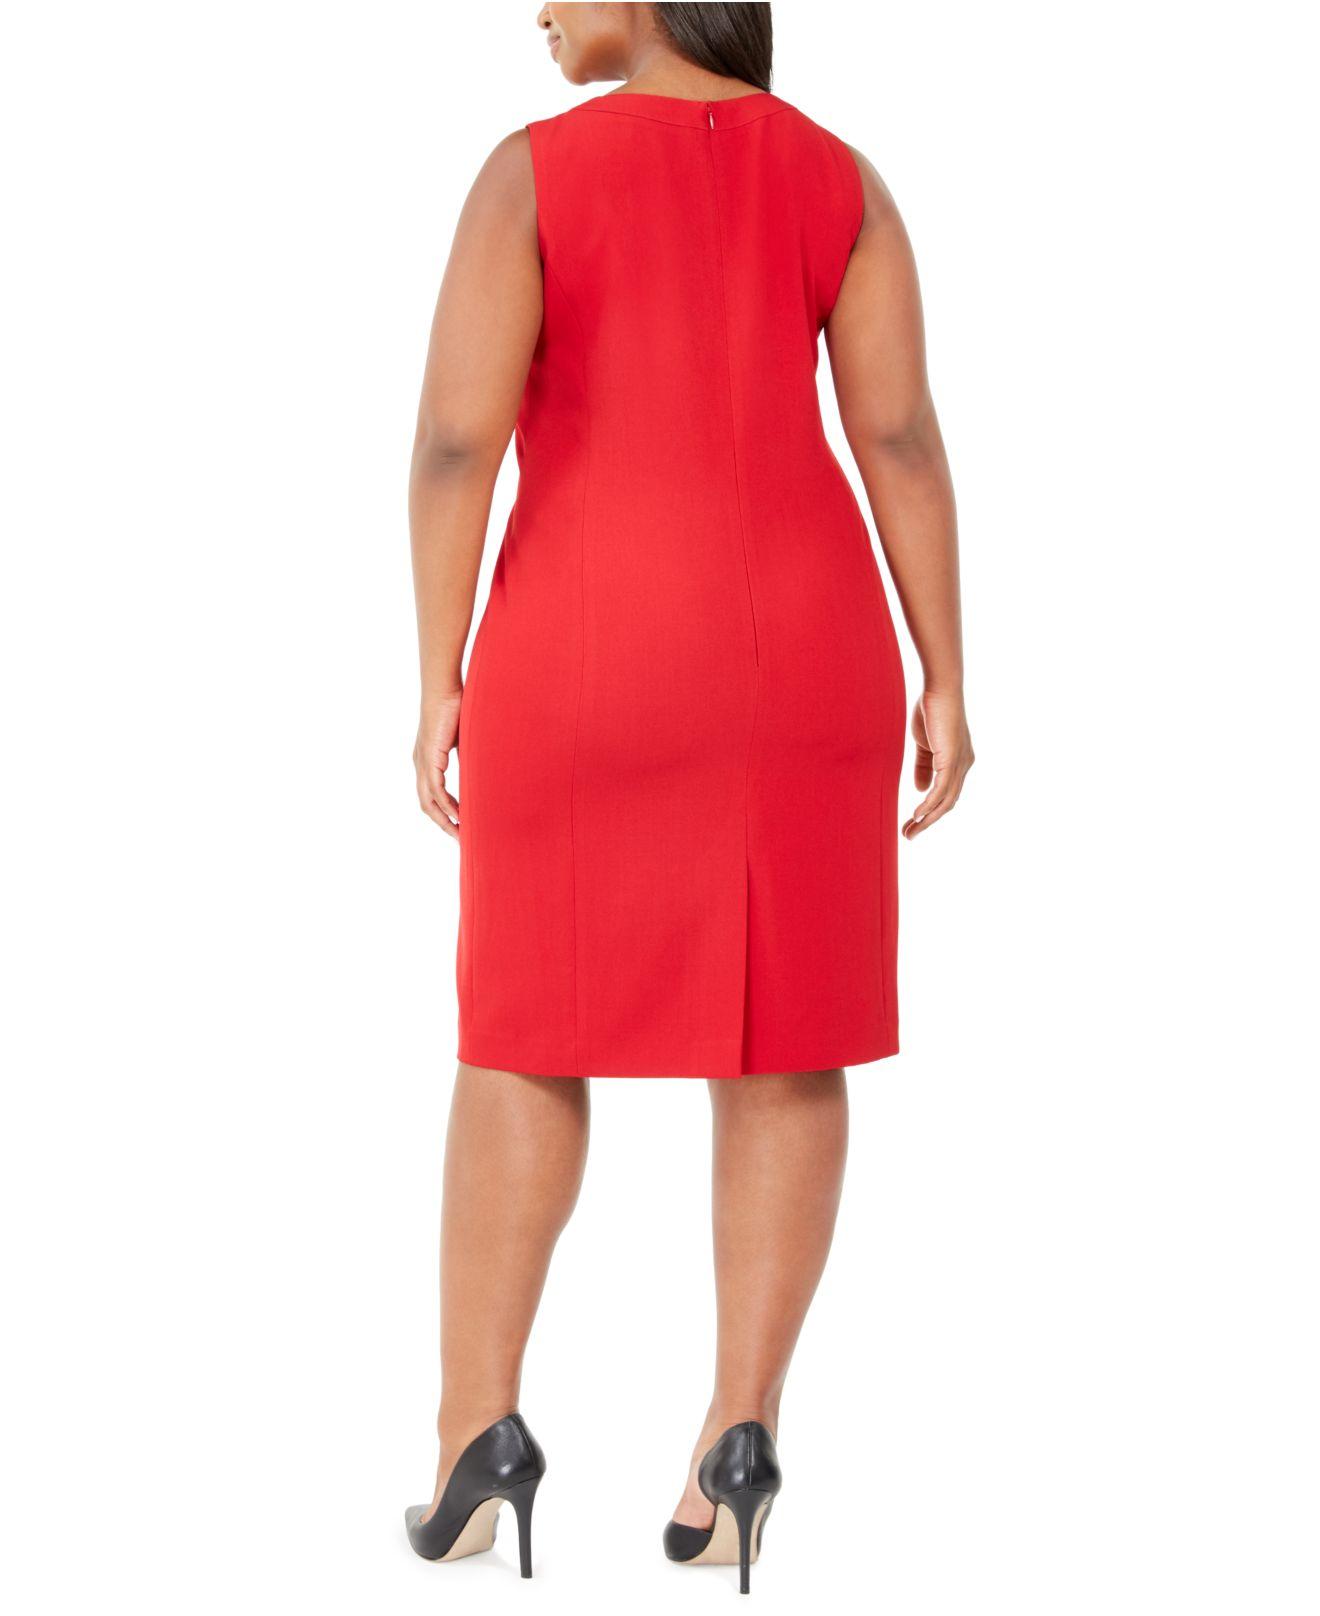 Kasper Synthetic Plus Size Sleeveless Sheath Dress in Red - Lyst